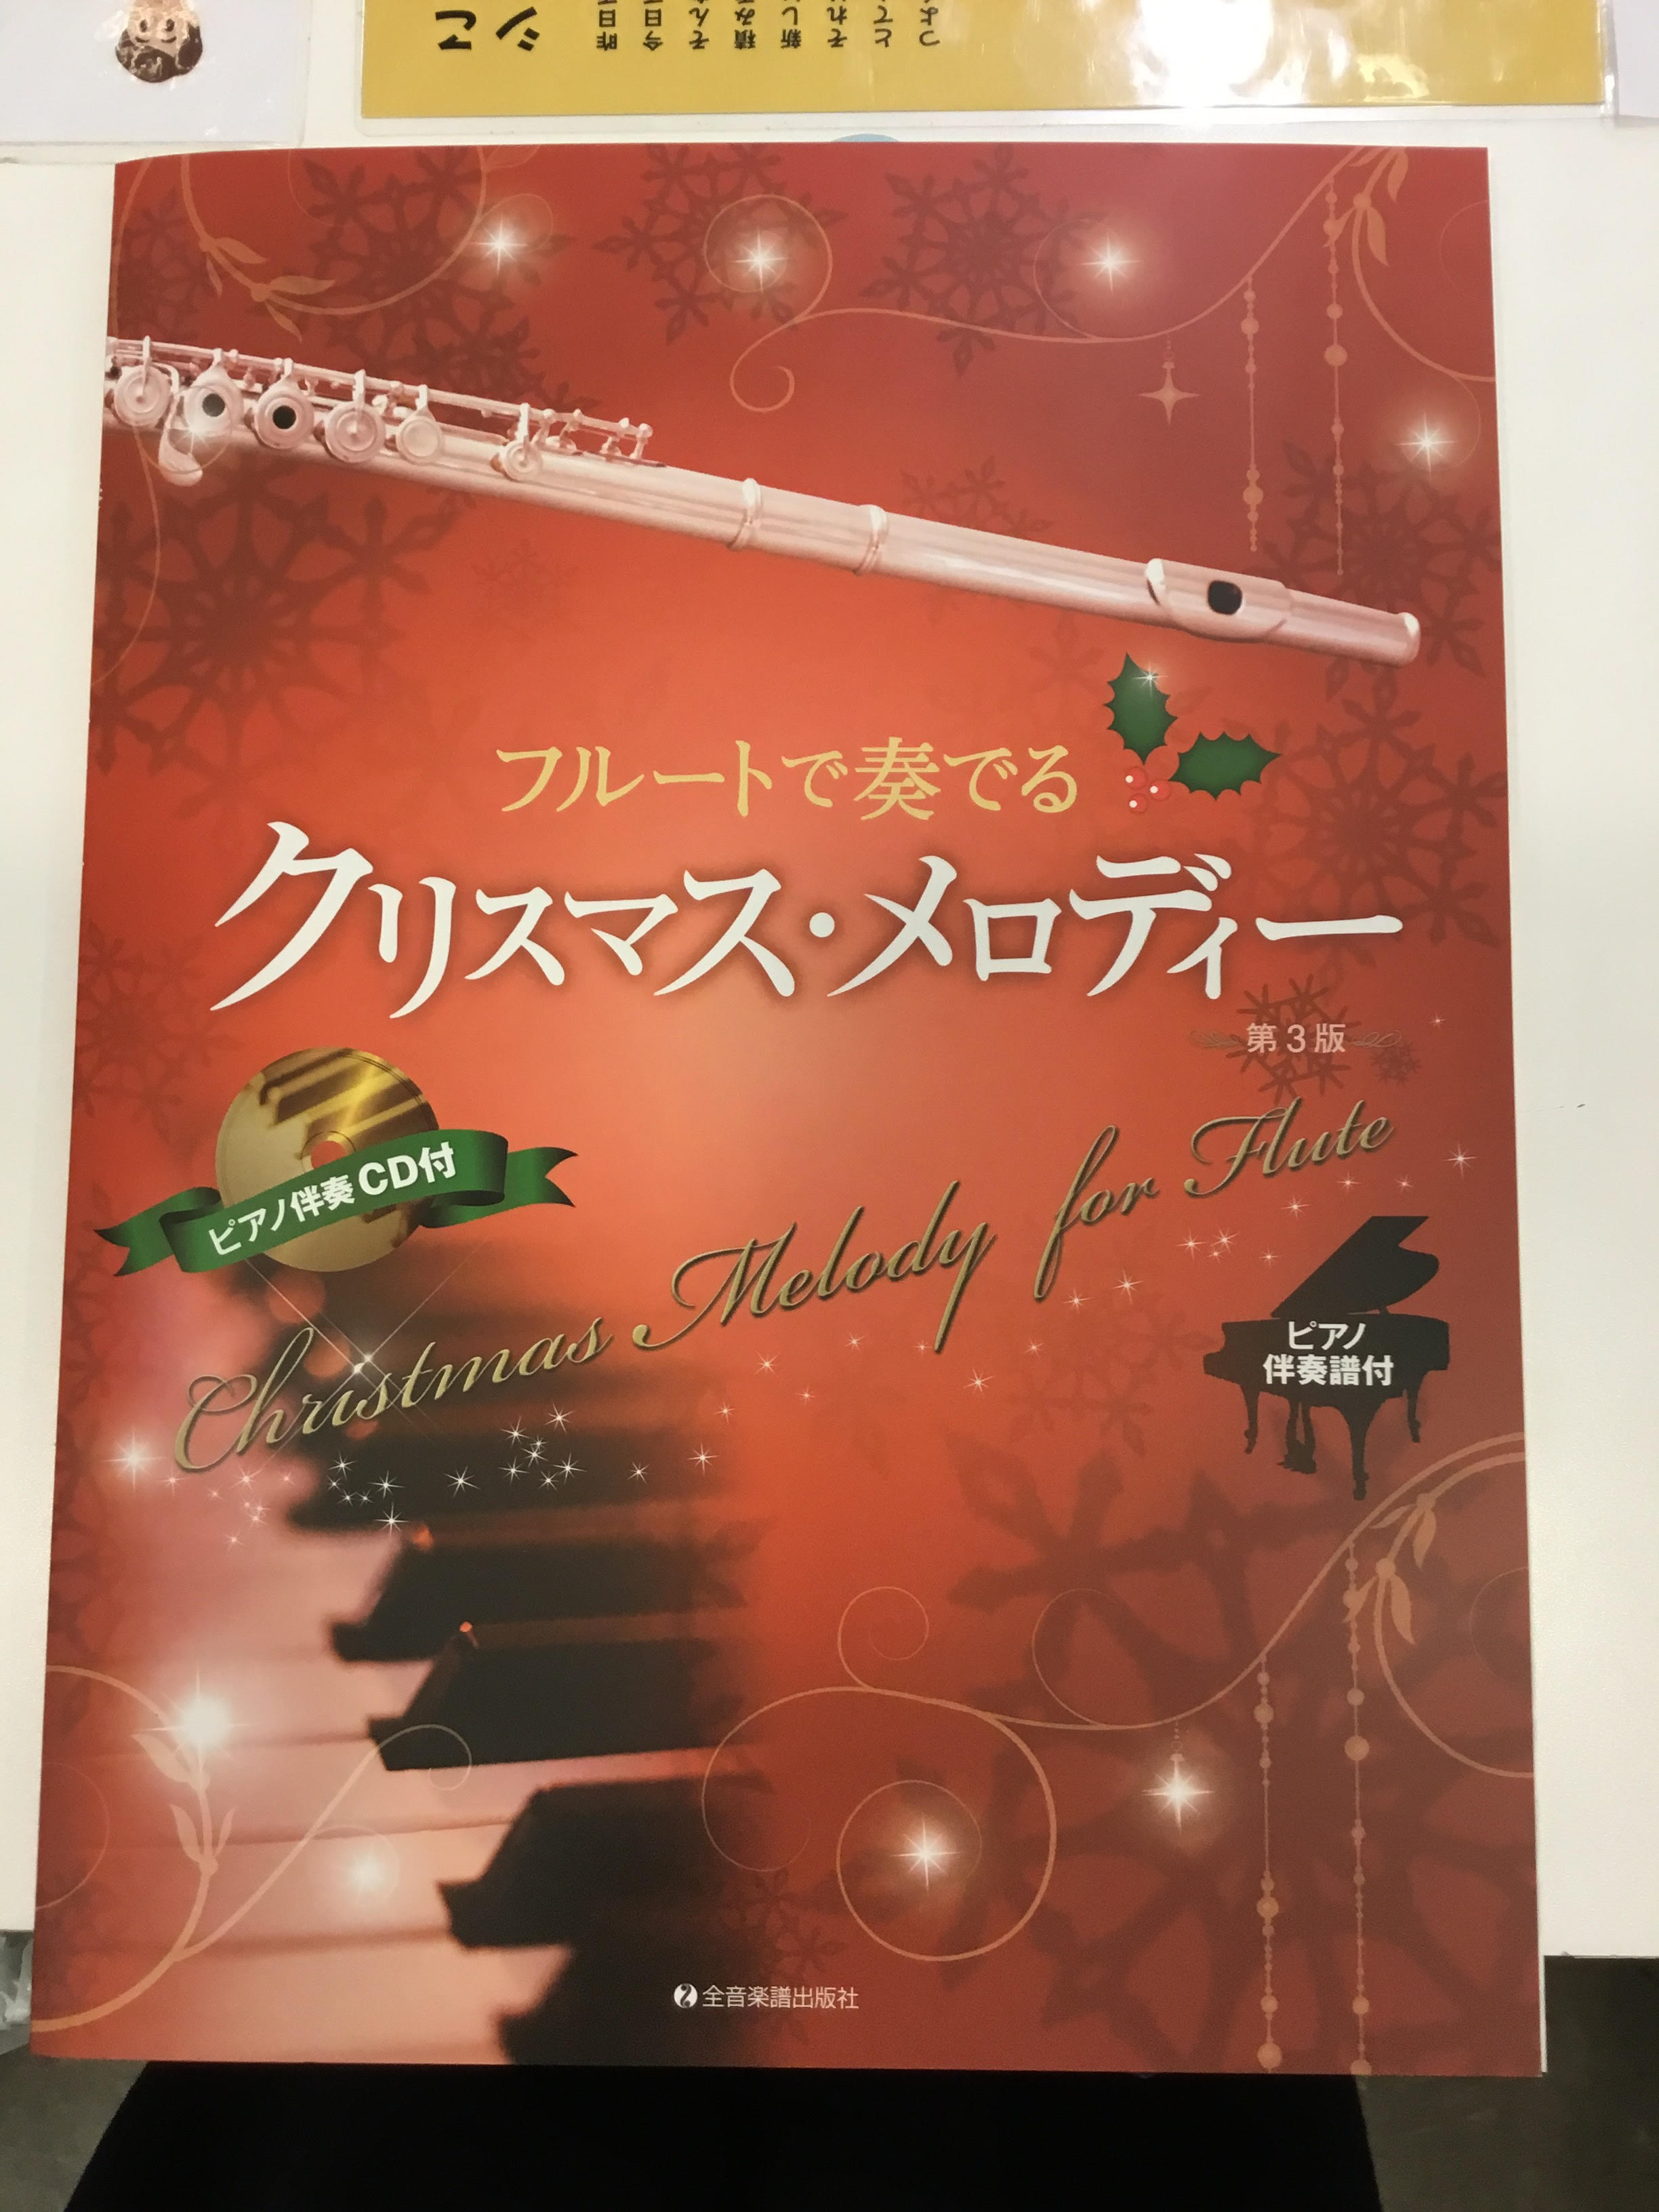 *今年は2冊のフルート用クリスマス楽譜が入荷致しました！ 皆さんこんにちは！フルートインストラクターの[https://www.shimamura.co.jp/shop/shintokorozawa/instructor/20171110/172:title=遠藤]です。]]11月に入り、今年もクリ […]